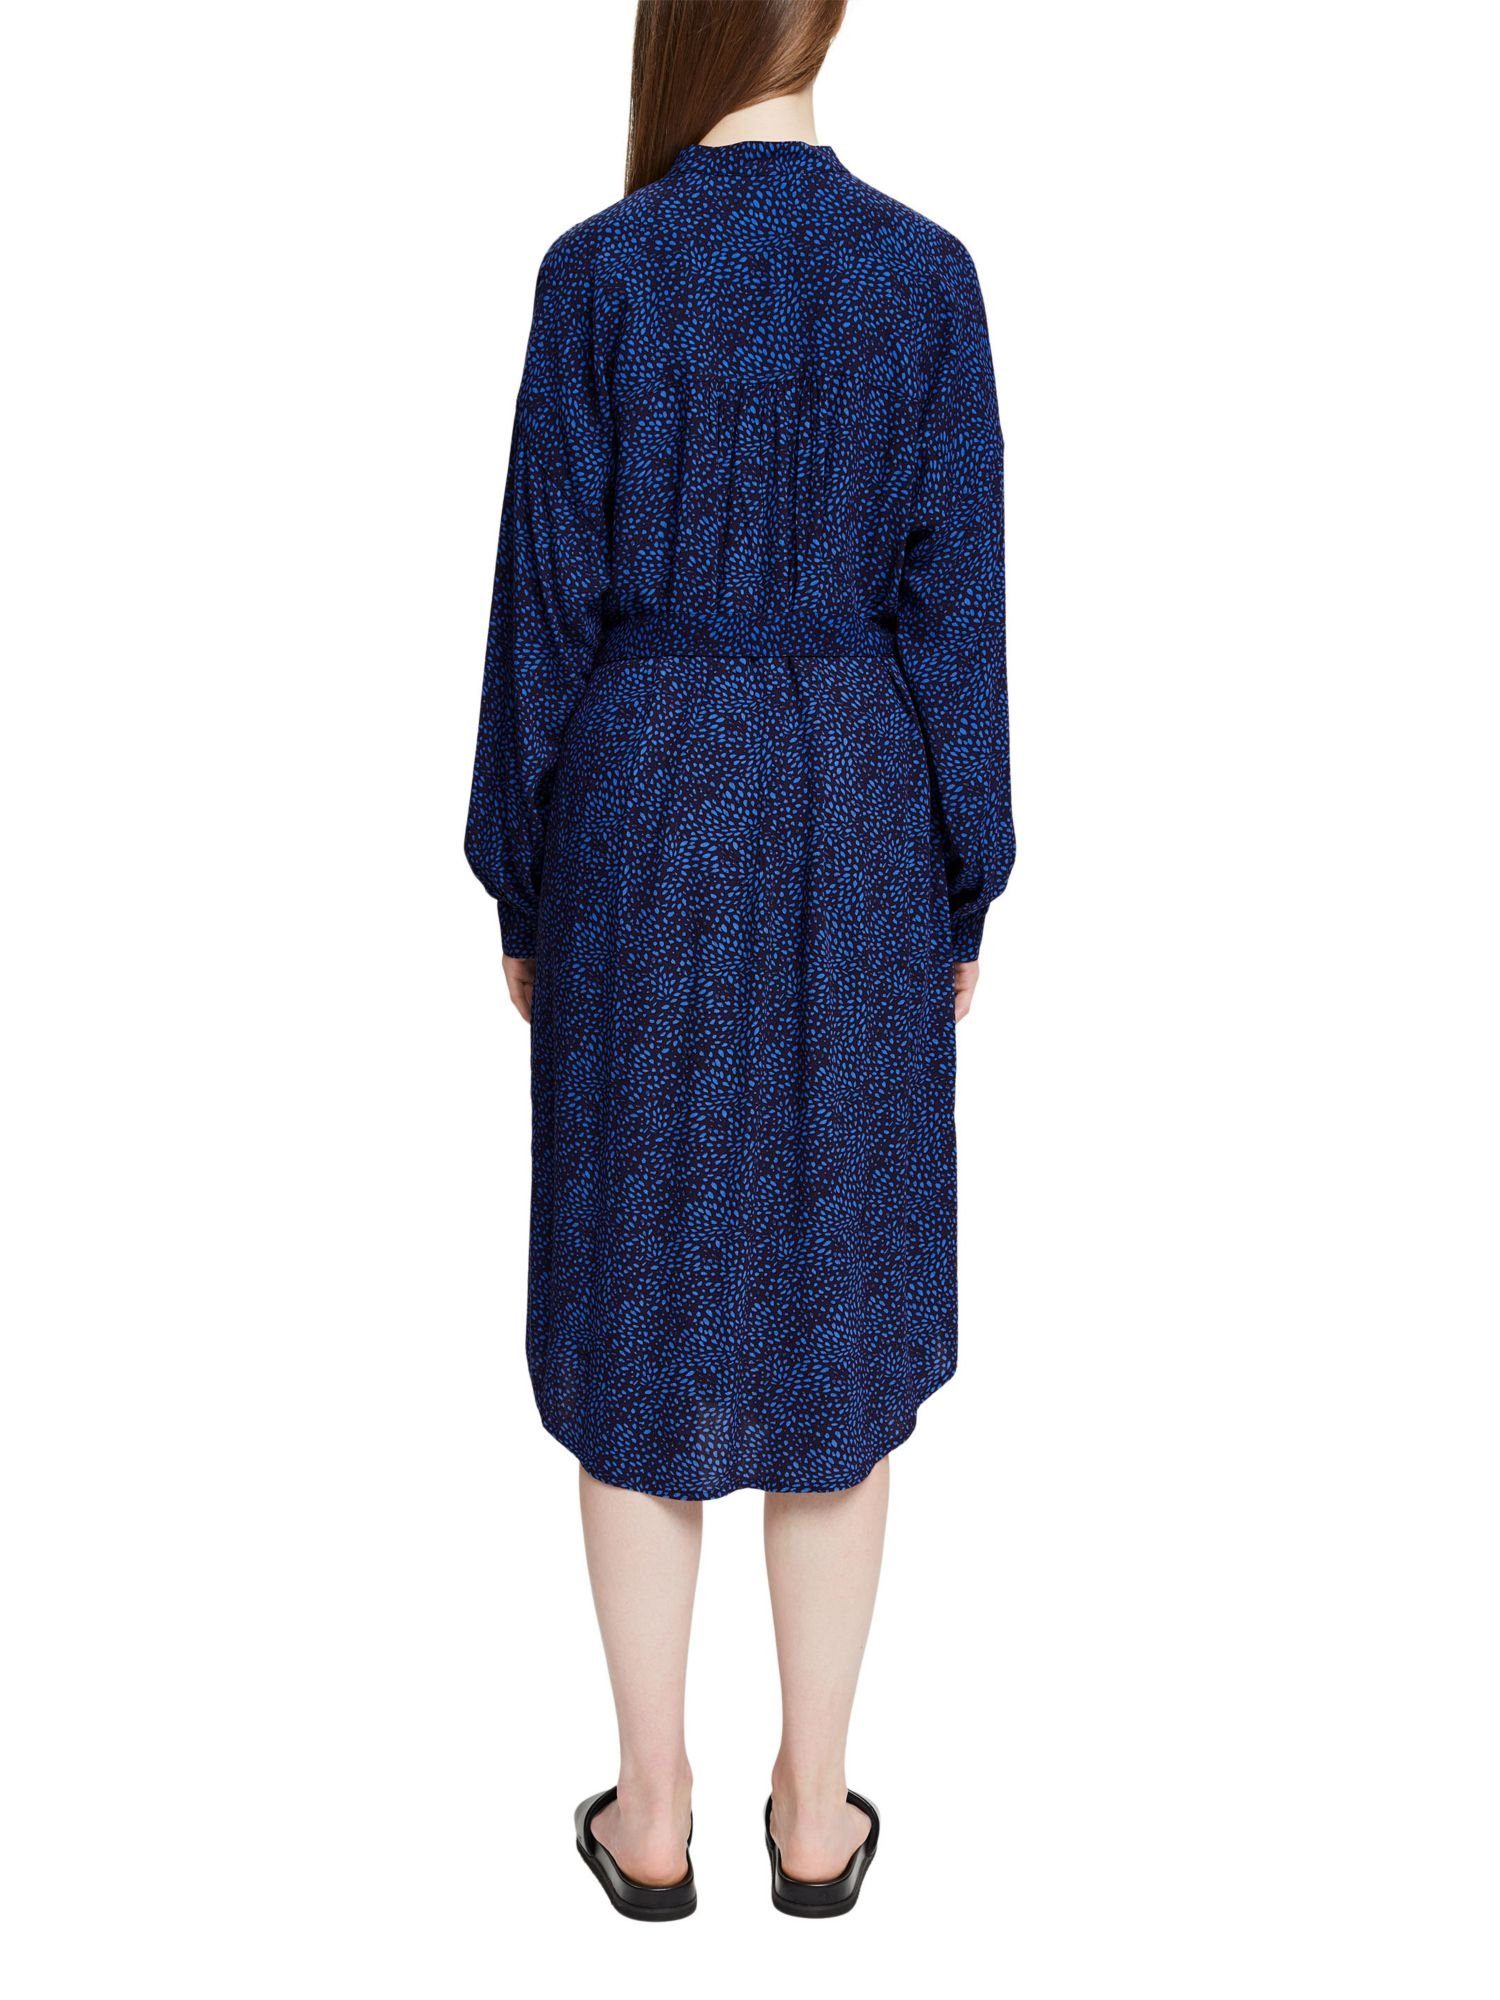 Minikleid mit Kleid ECOVERO™ LENZING™ NEW NAVY Esprit und Gürtel, Muster